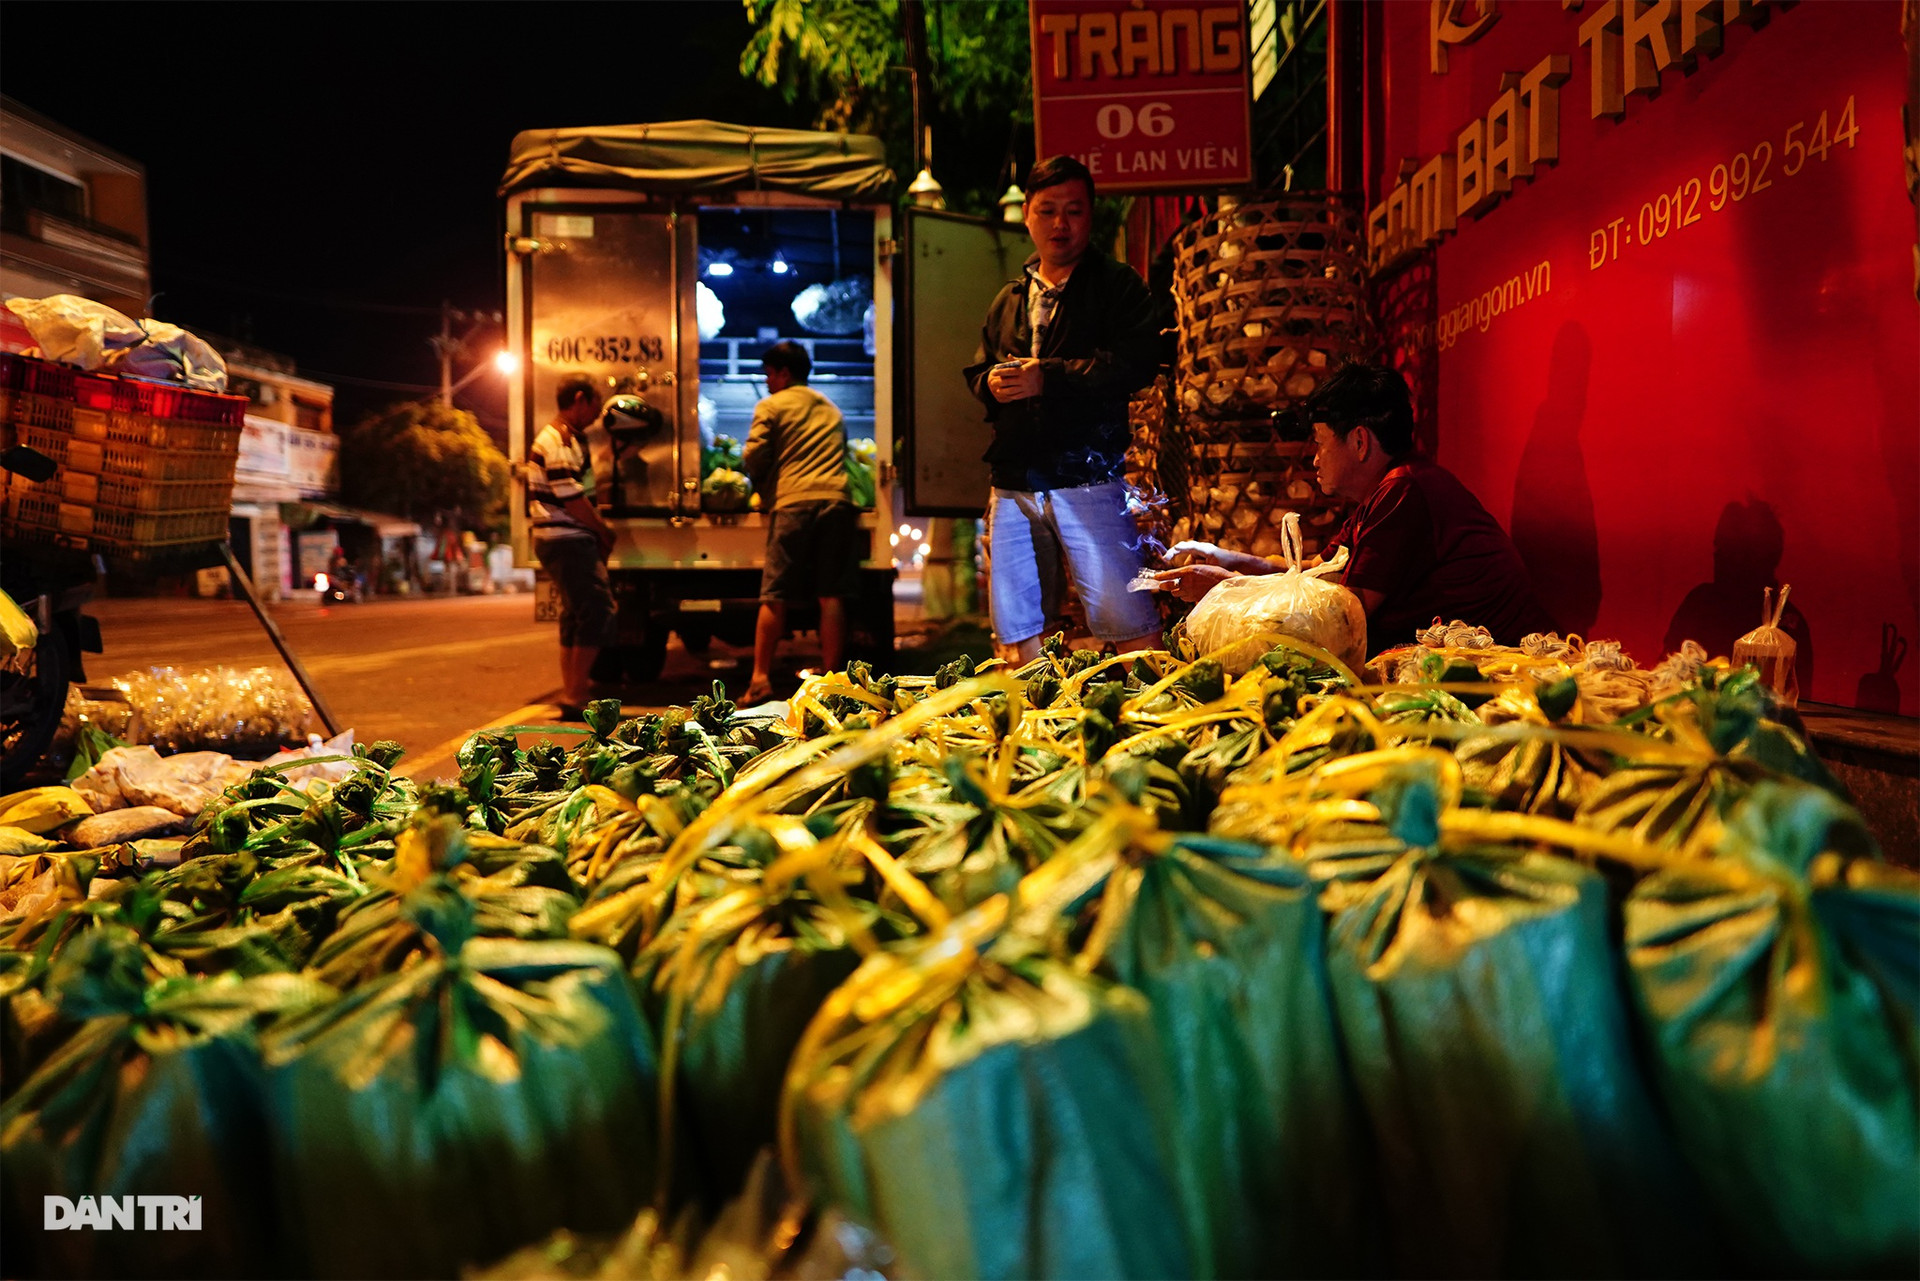 Chợ côn trùng ở Sài Gòn ngày họp 2 tiếng, tan trước hừng đông - 7